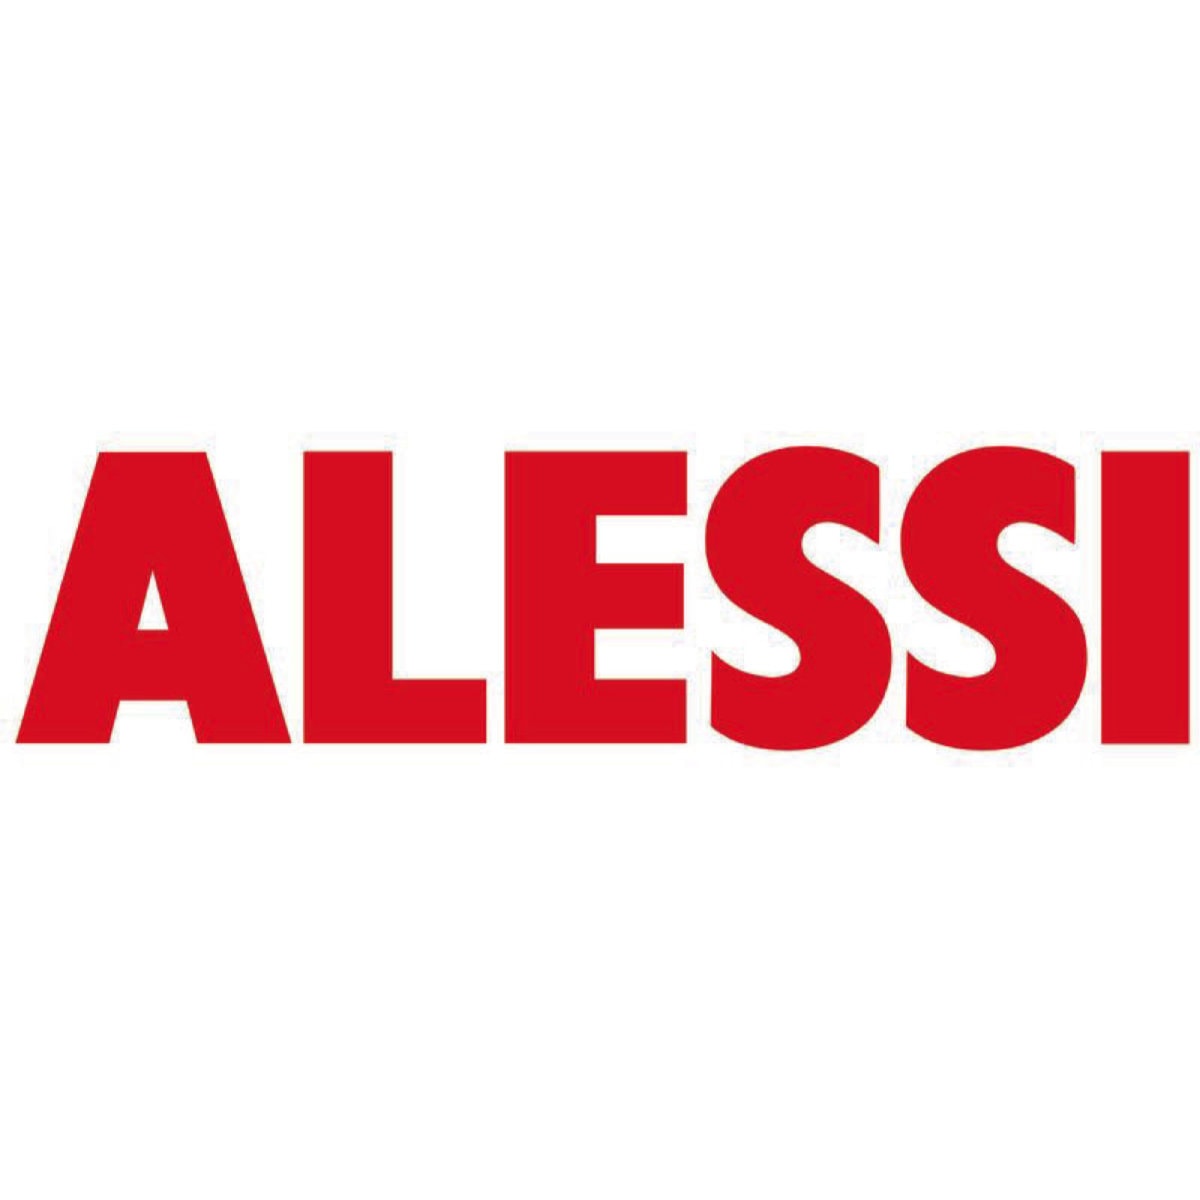 Logo Alessi